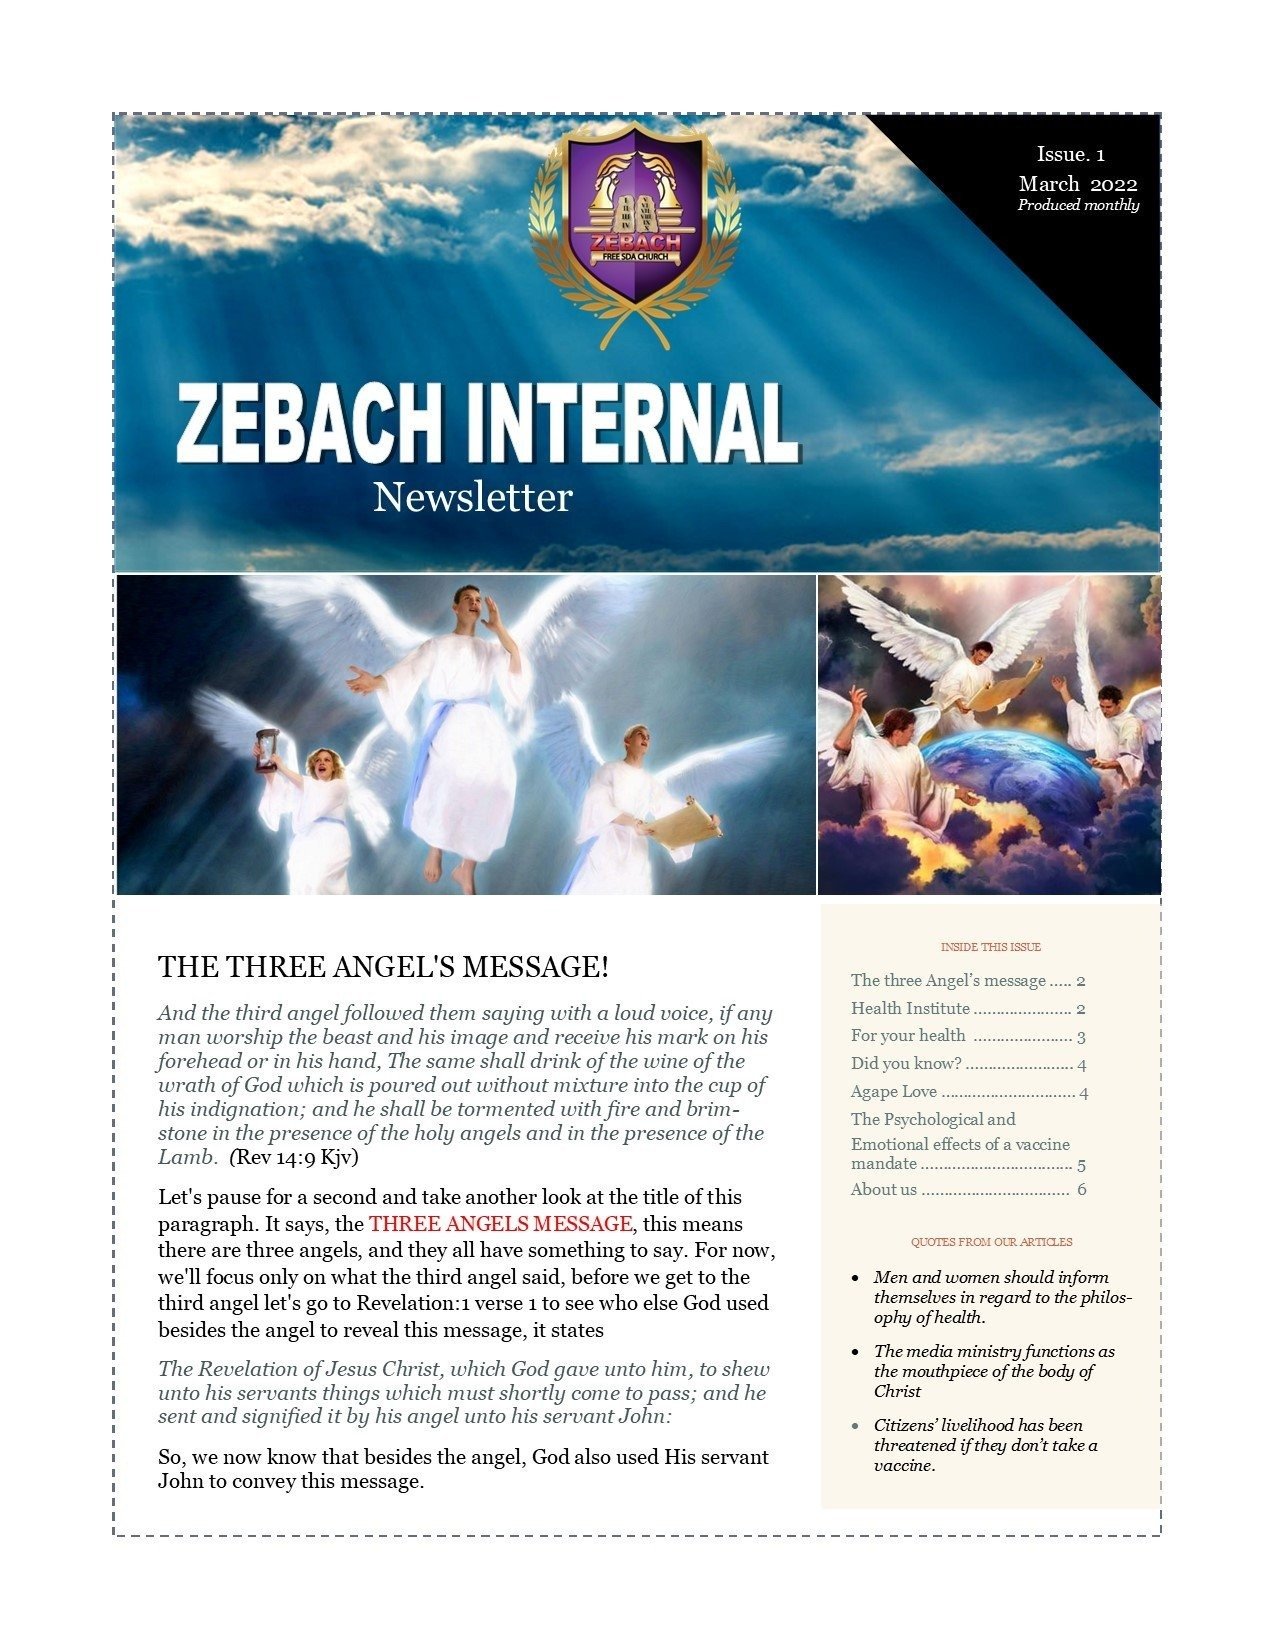 ZEBACH INTERNAL NEWSLETTER (Issue 1)